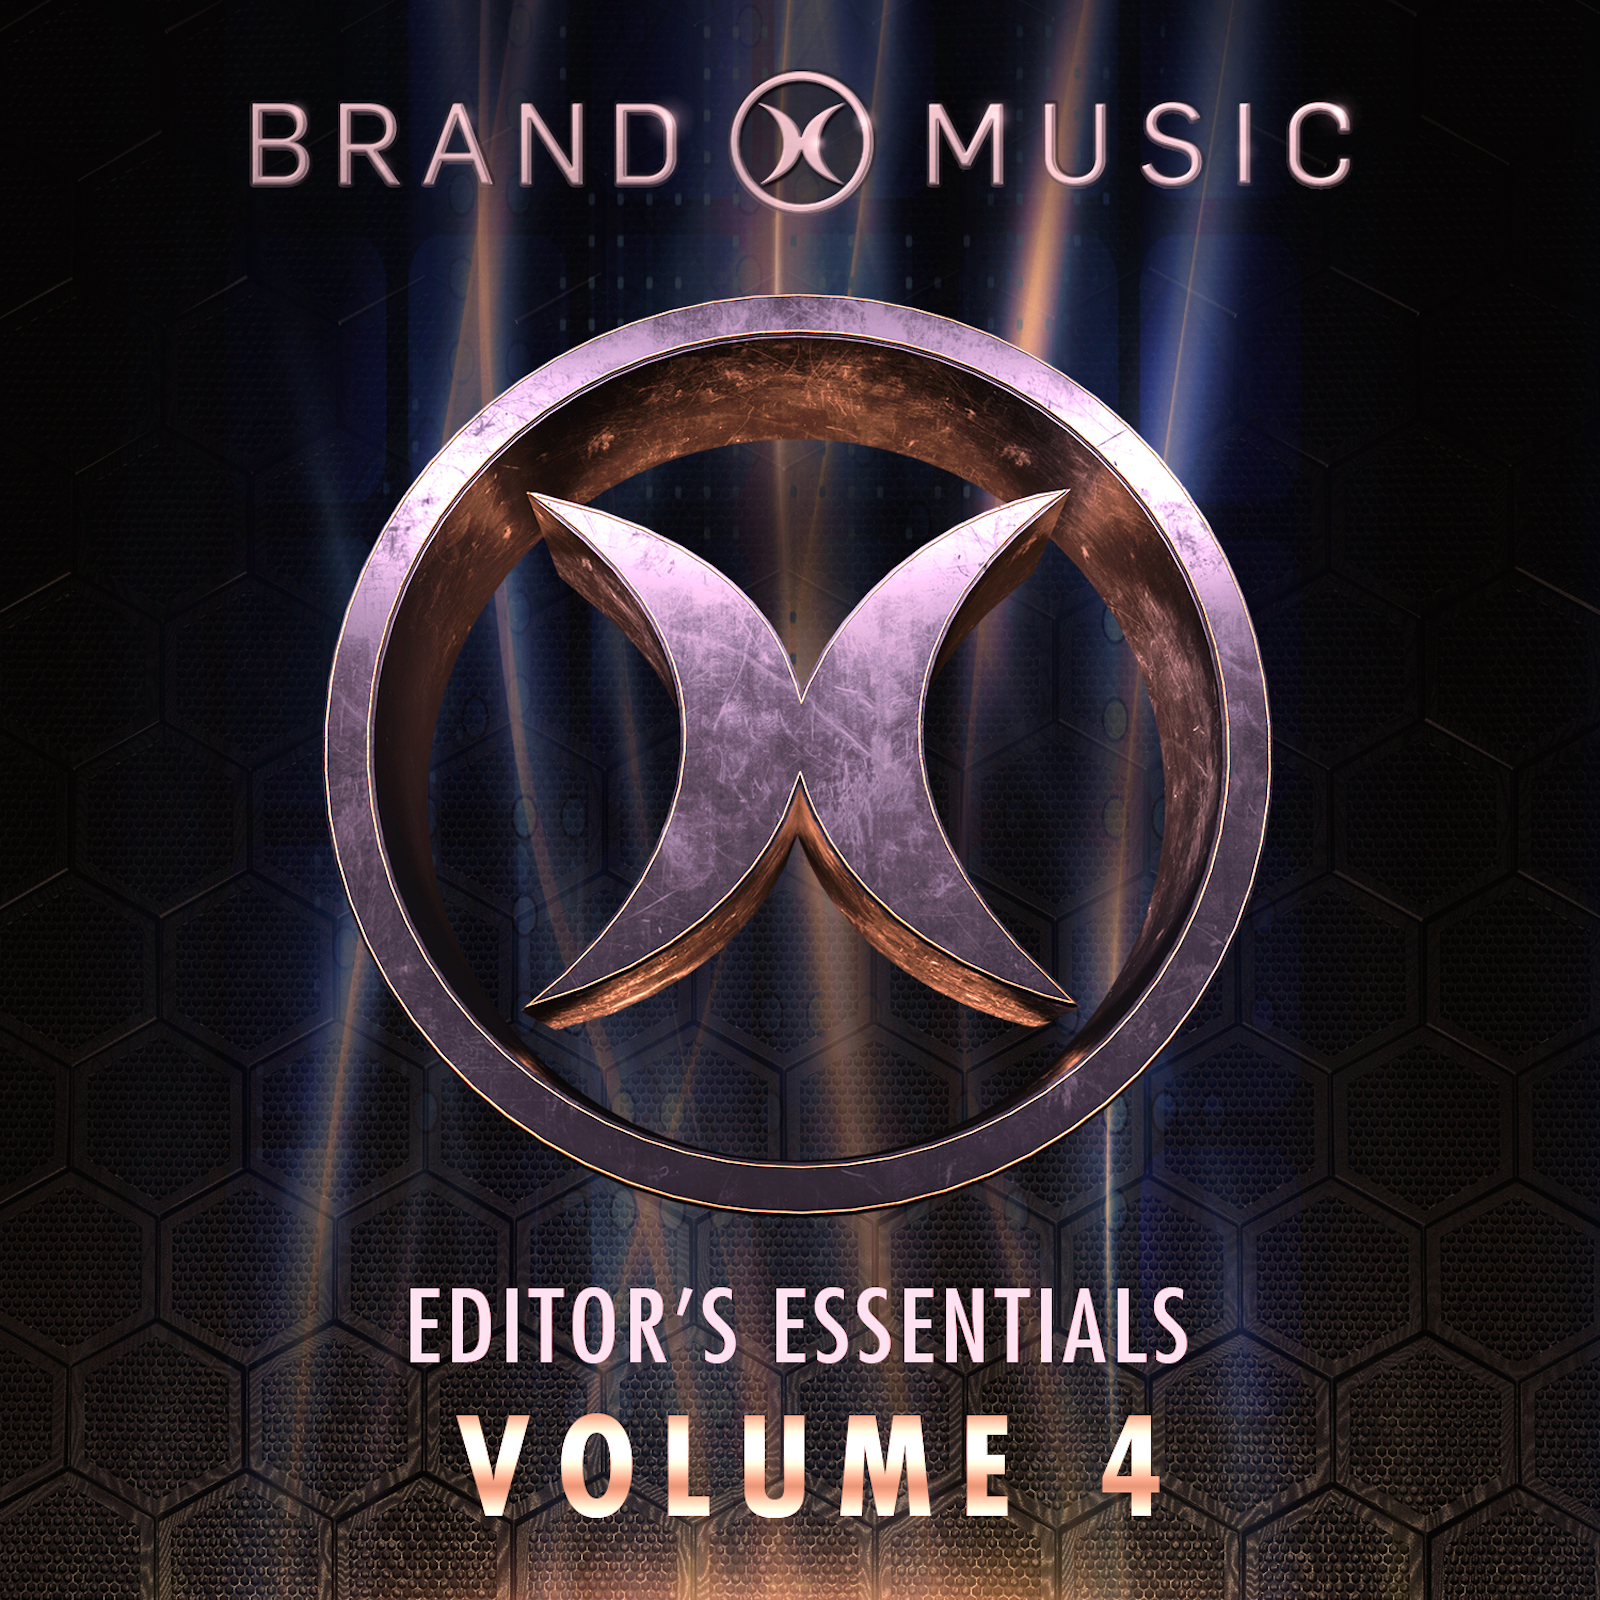 Editors Essentials Volume 4